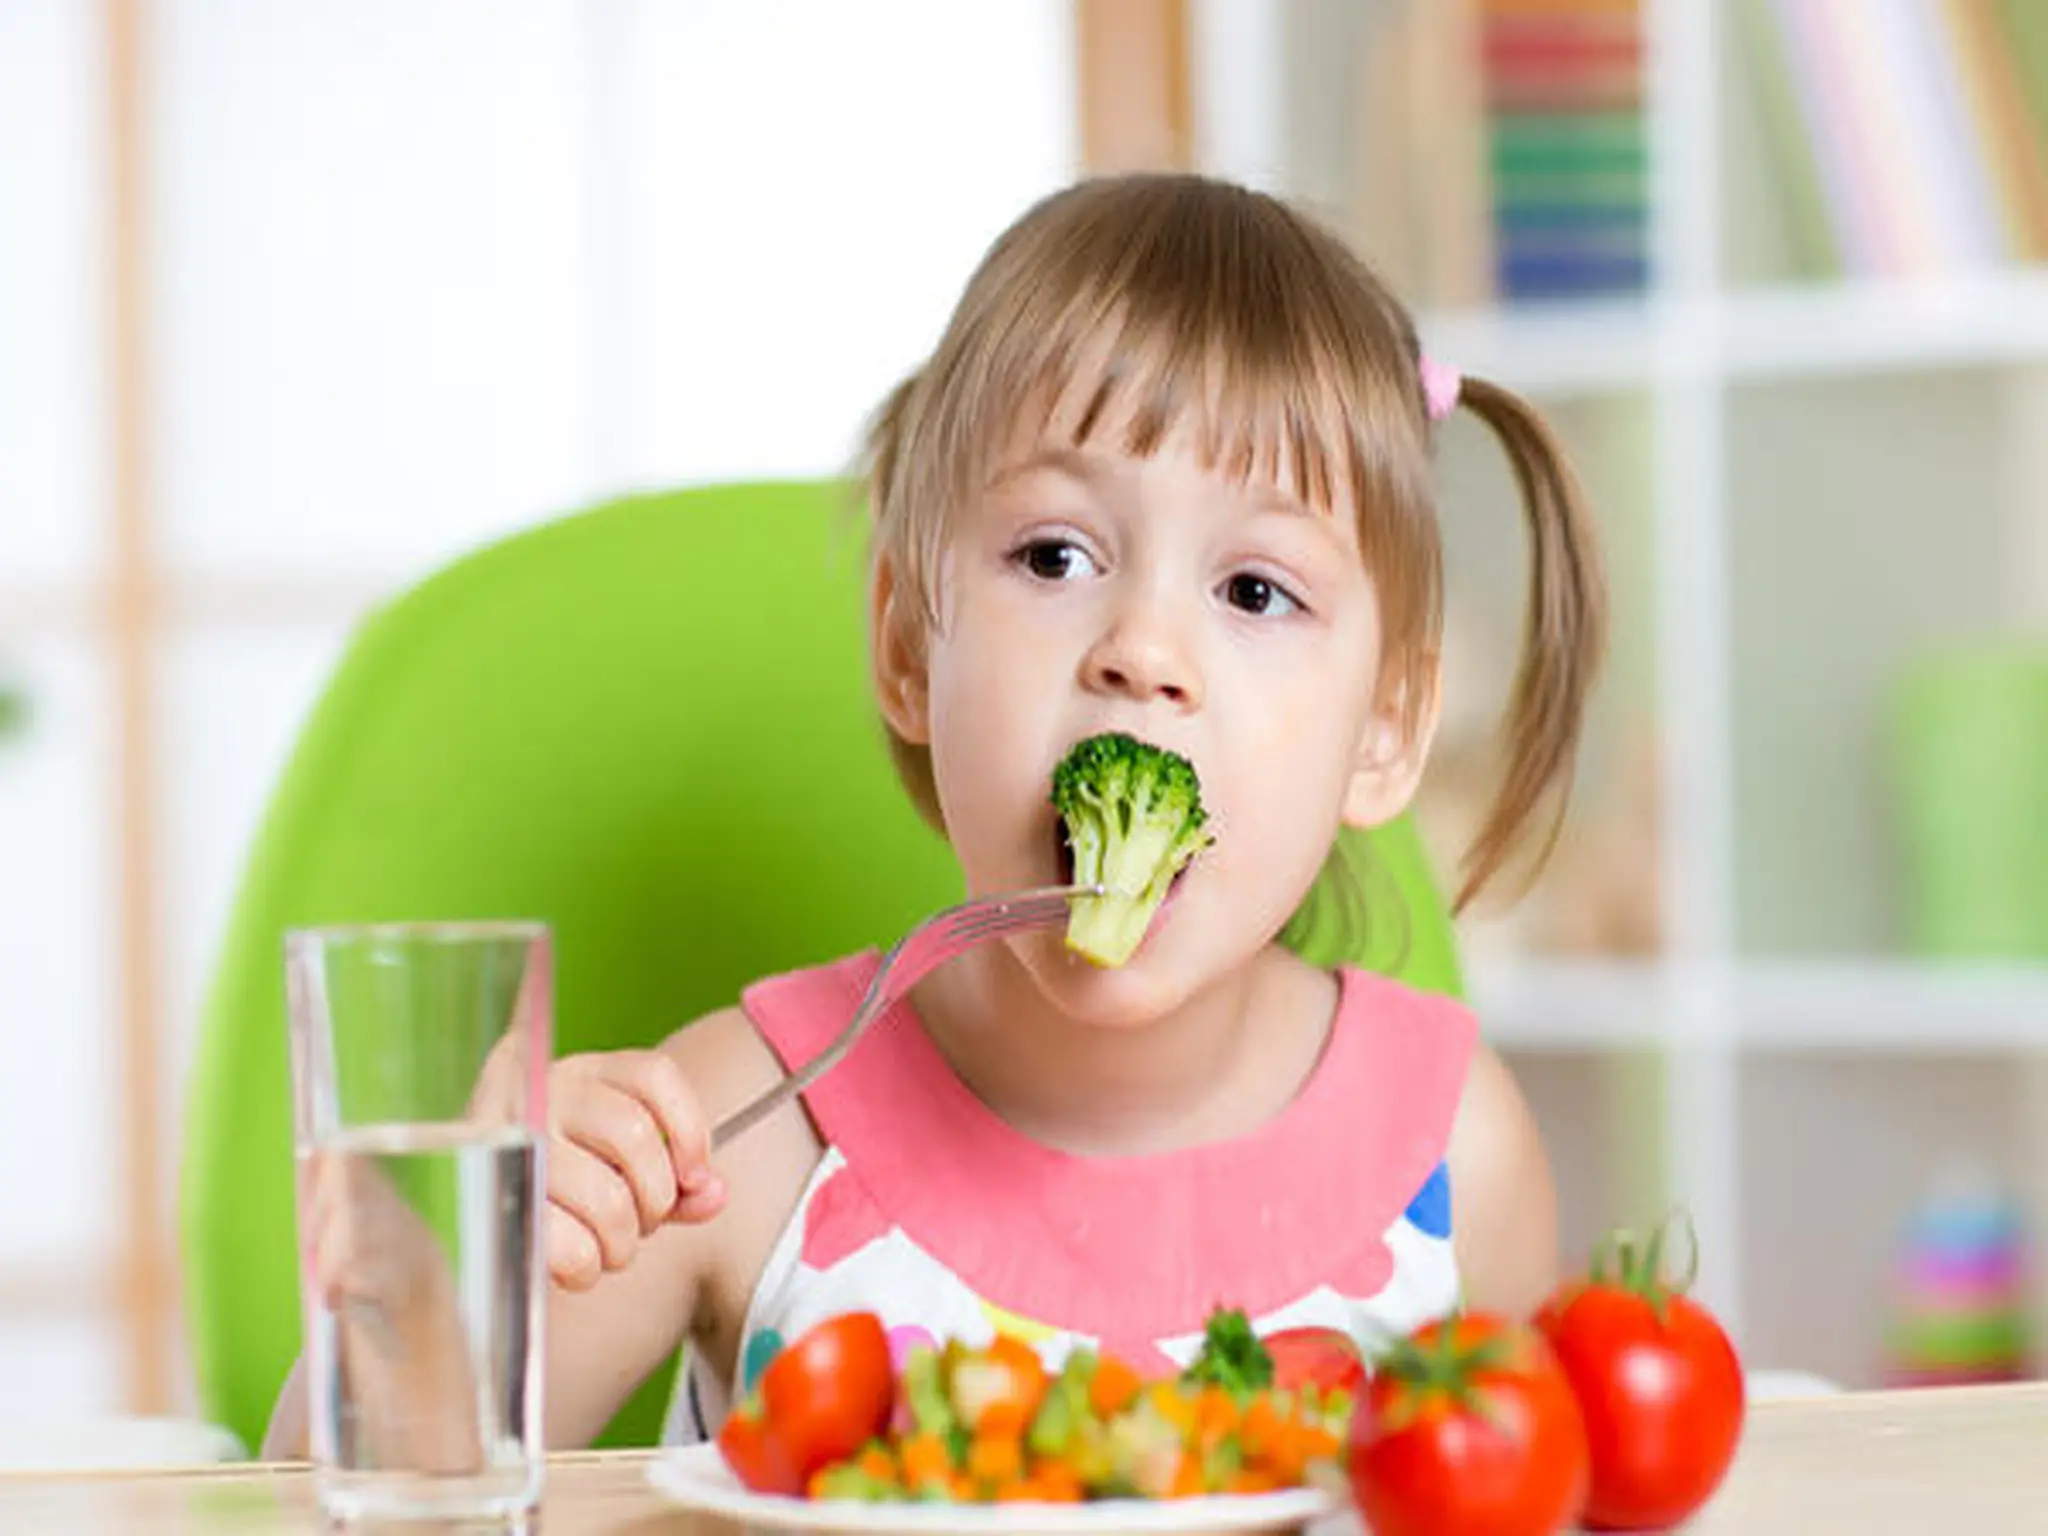 أكلات تساعد في زيادة معدل الذكاء لدى الأطفال...تعرف عليها